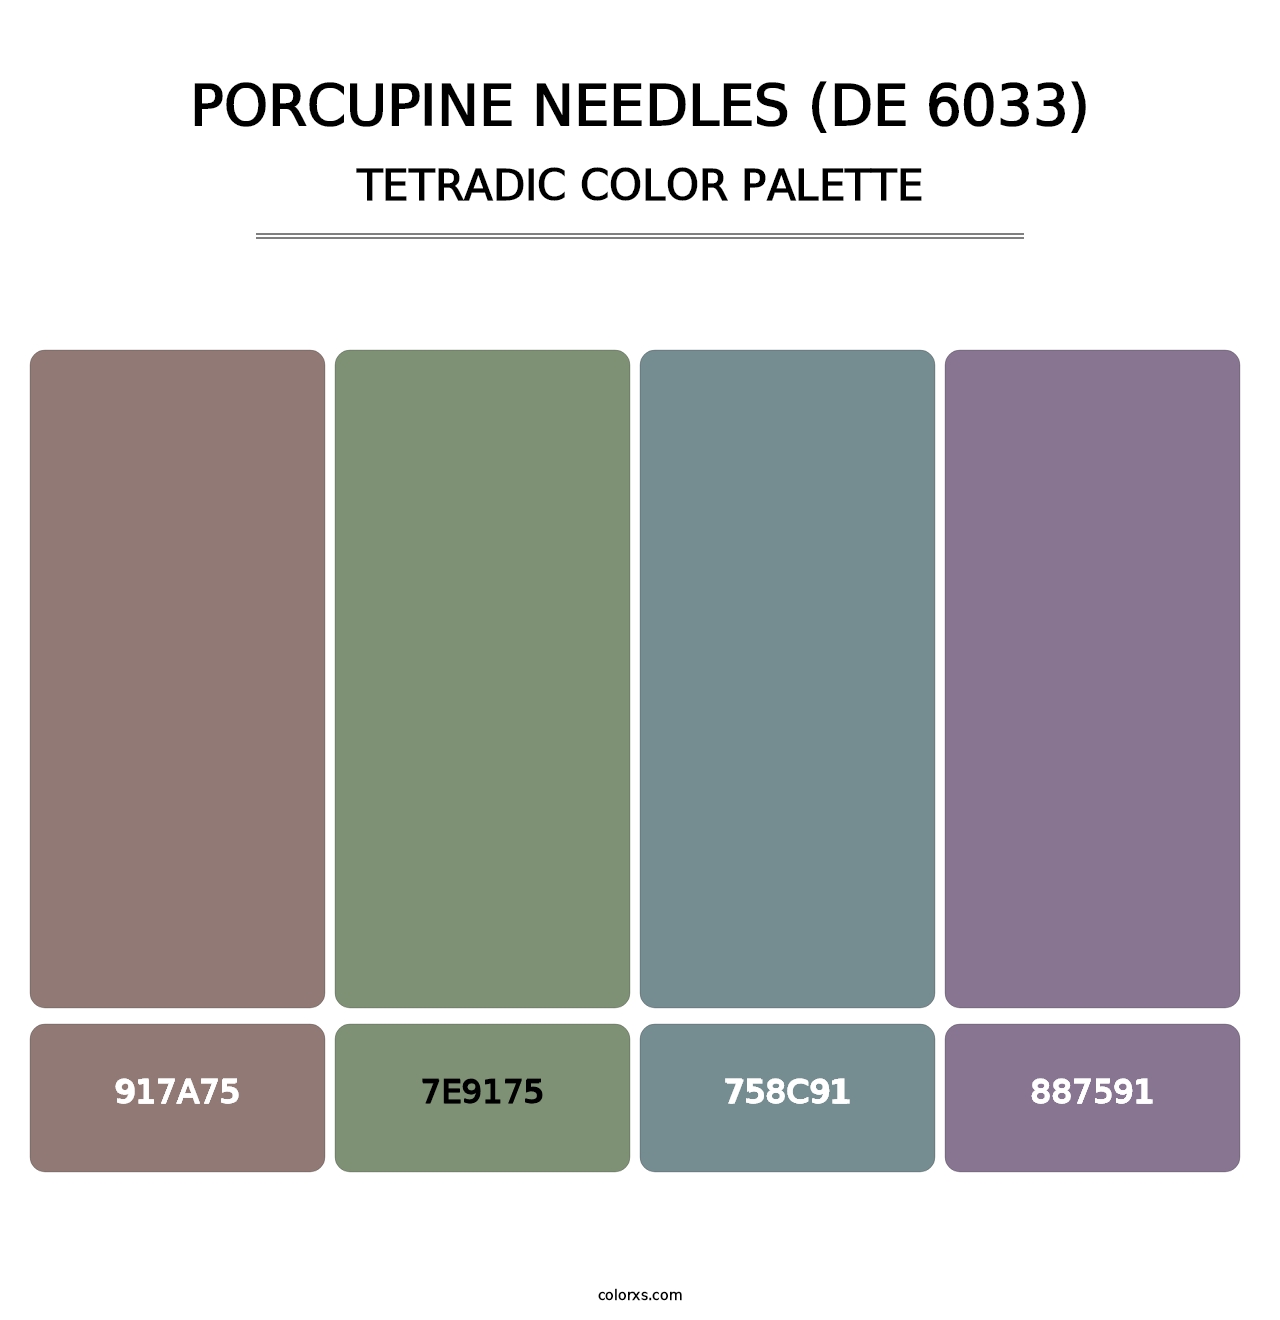 Porcupine Needles (DE 6033) - Tetradic Color Palette